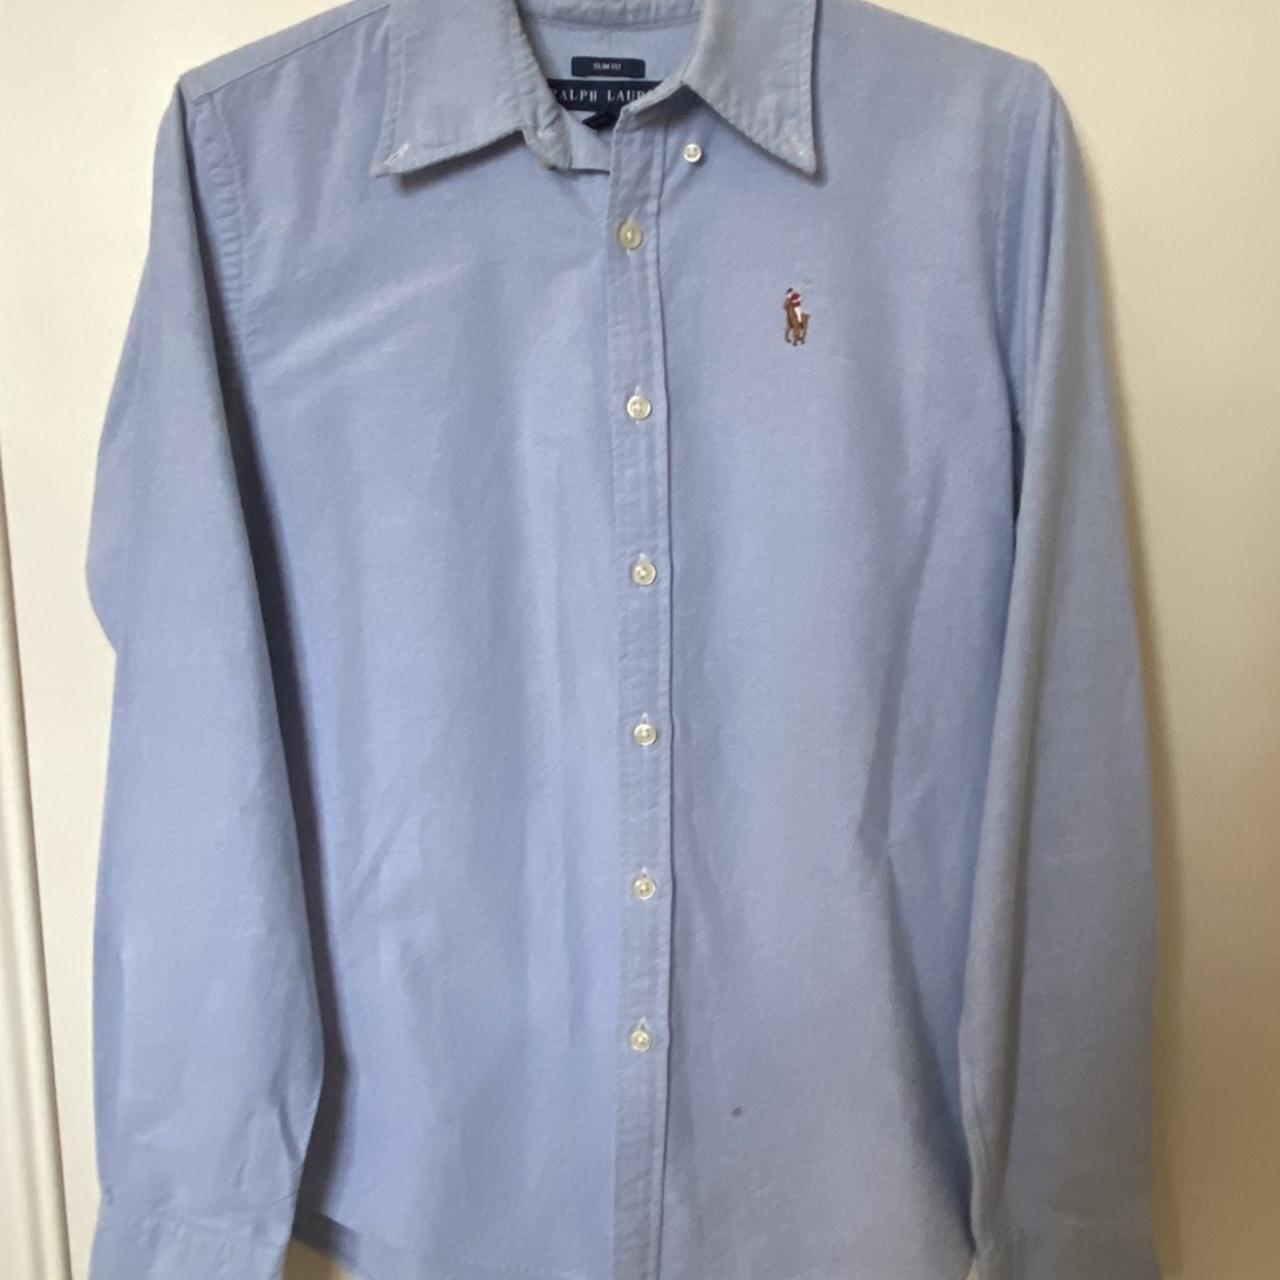 Vintage Ralph Lauren shirt in amazing condition💙... - Depop